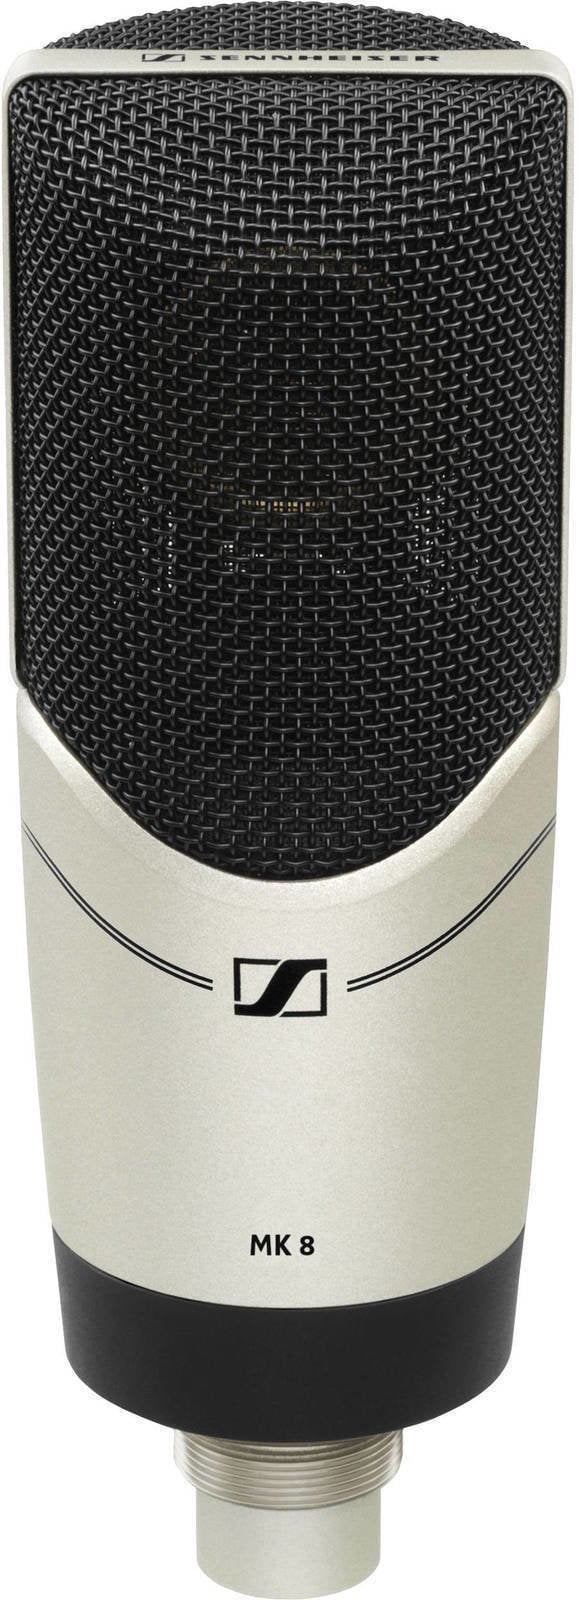 Microfon cu condensator pentru studio Sennheiser MK 8 Microfon cu condensator pentru studio